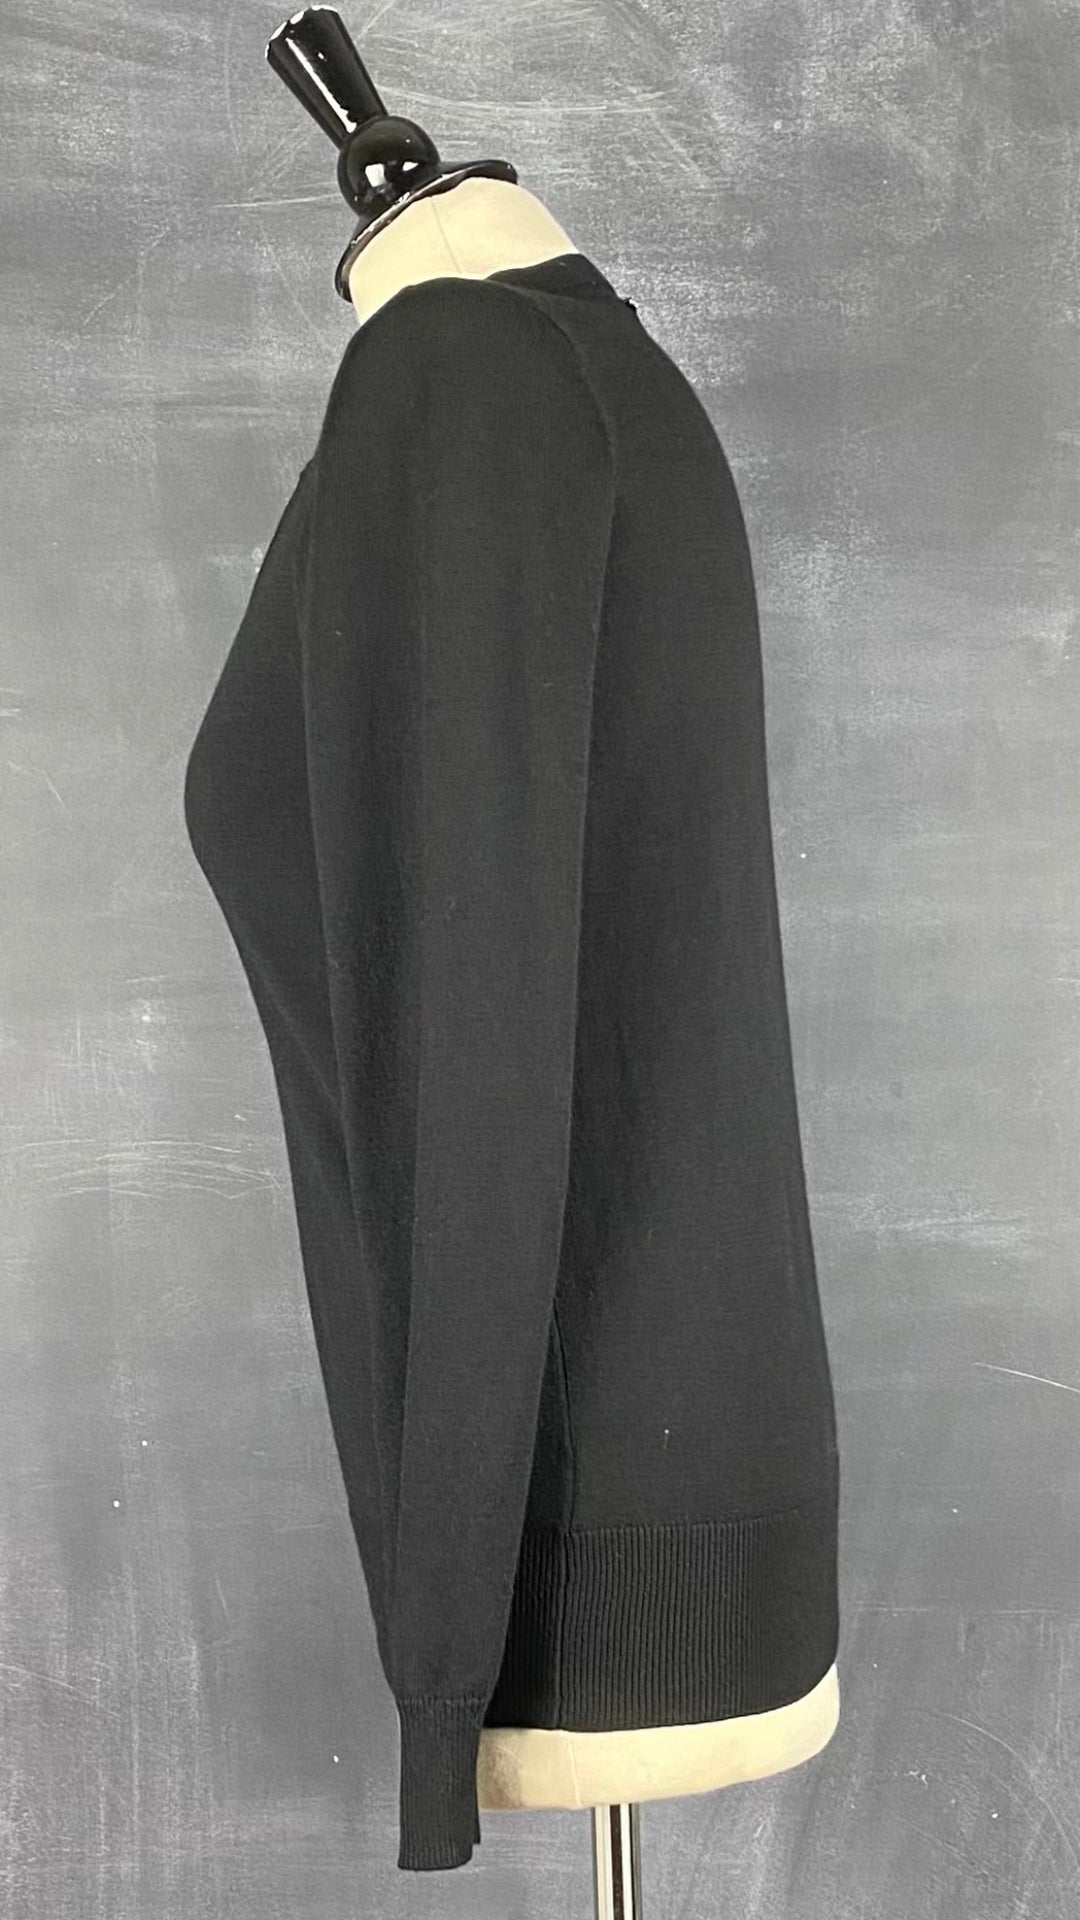 Chandail noir en tricot à encolure à ouvertures majestueuses Michael Kors, taille small. Vue de côté.